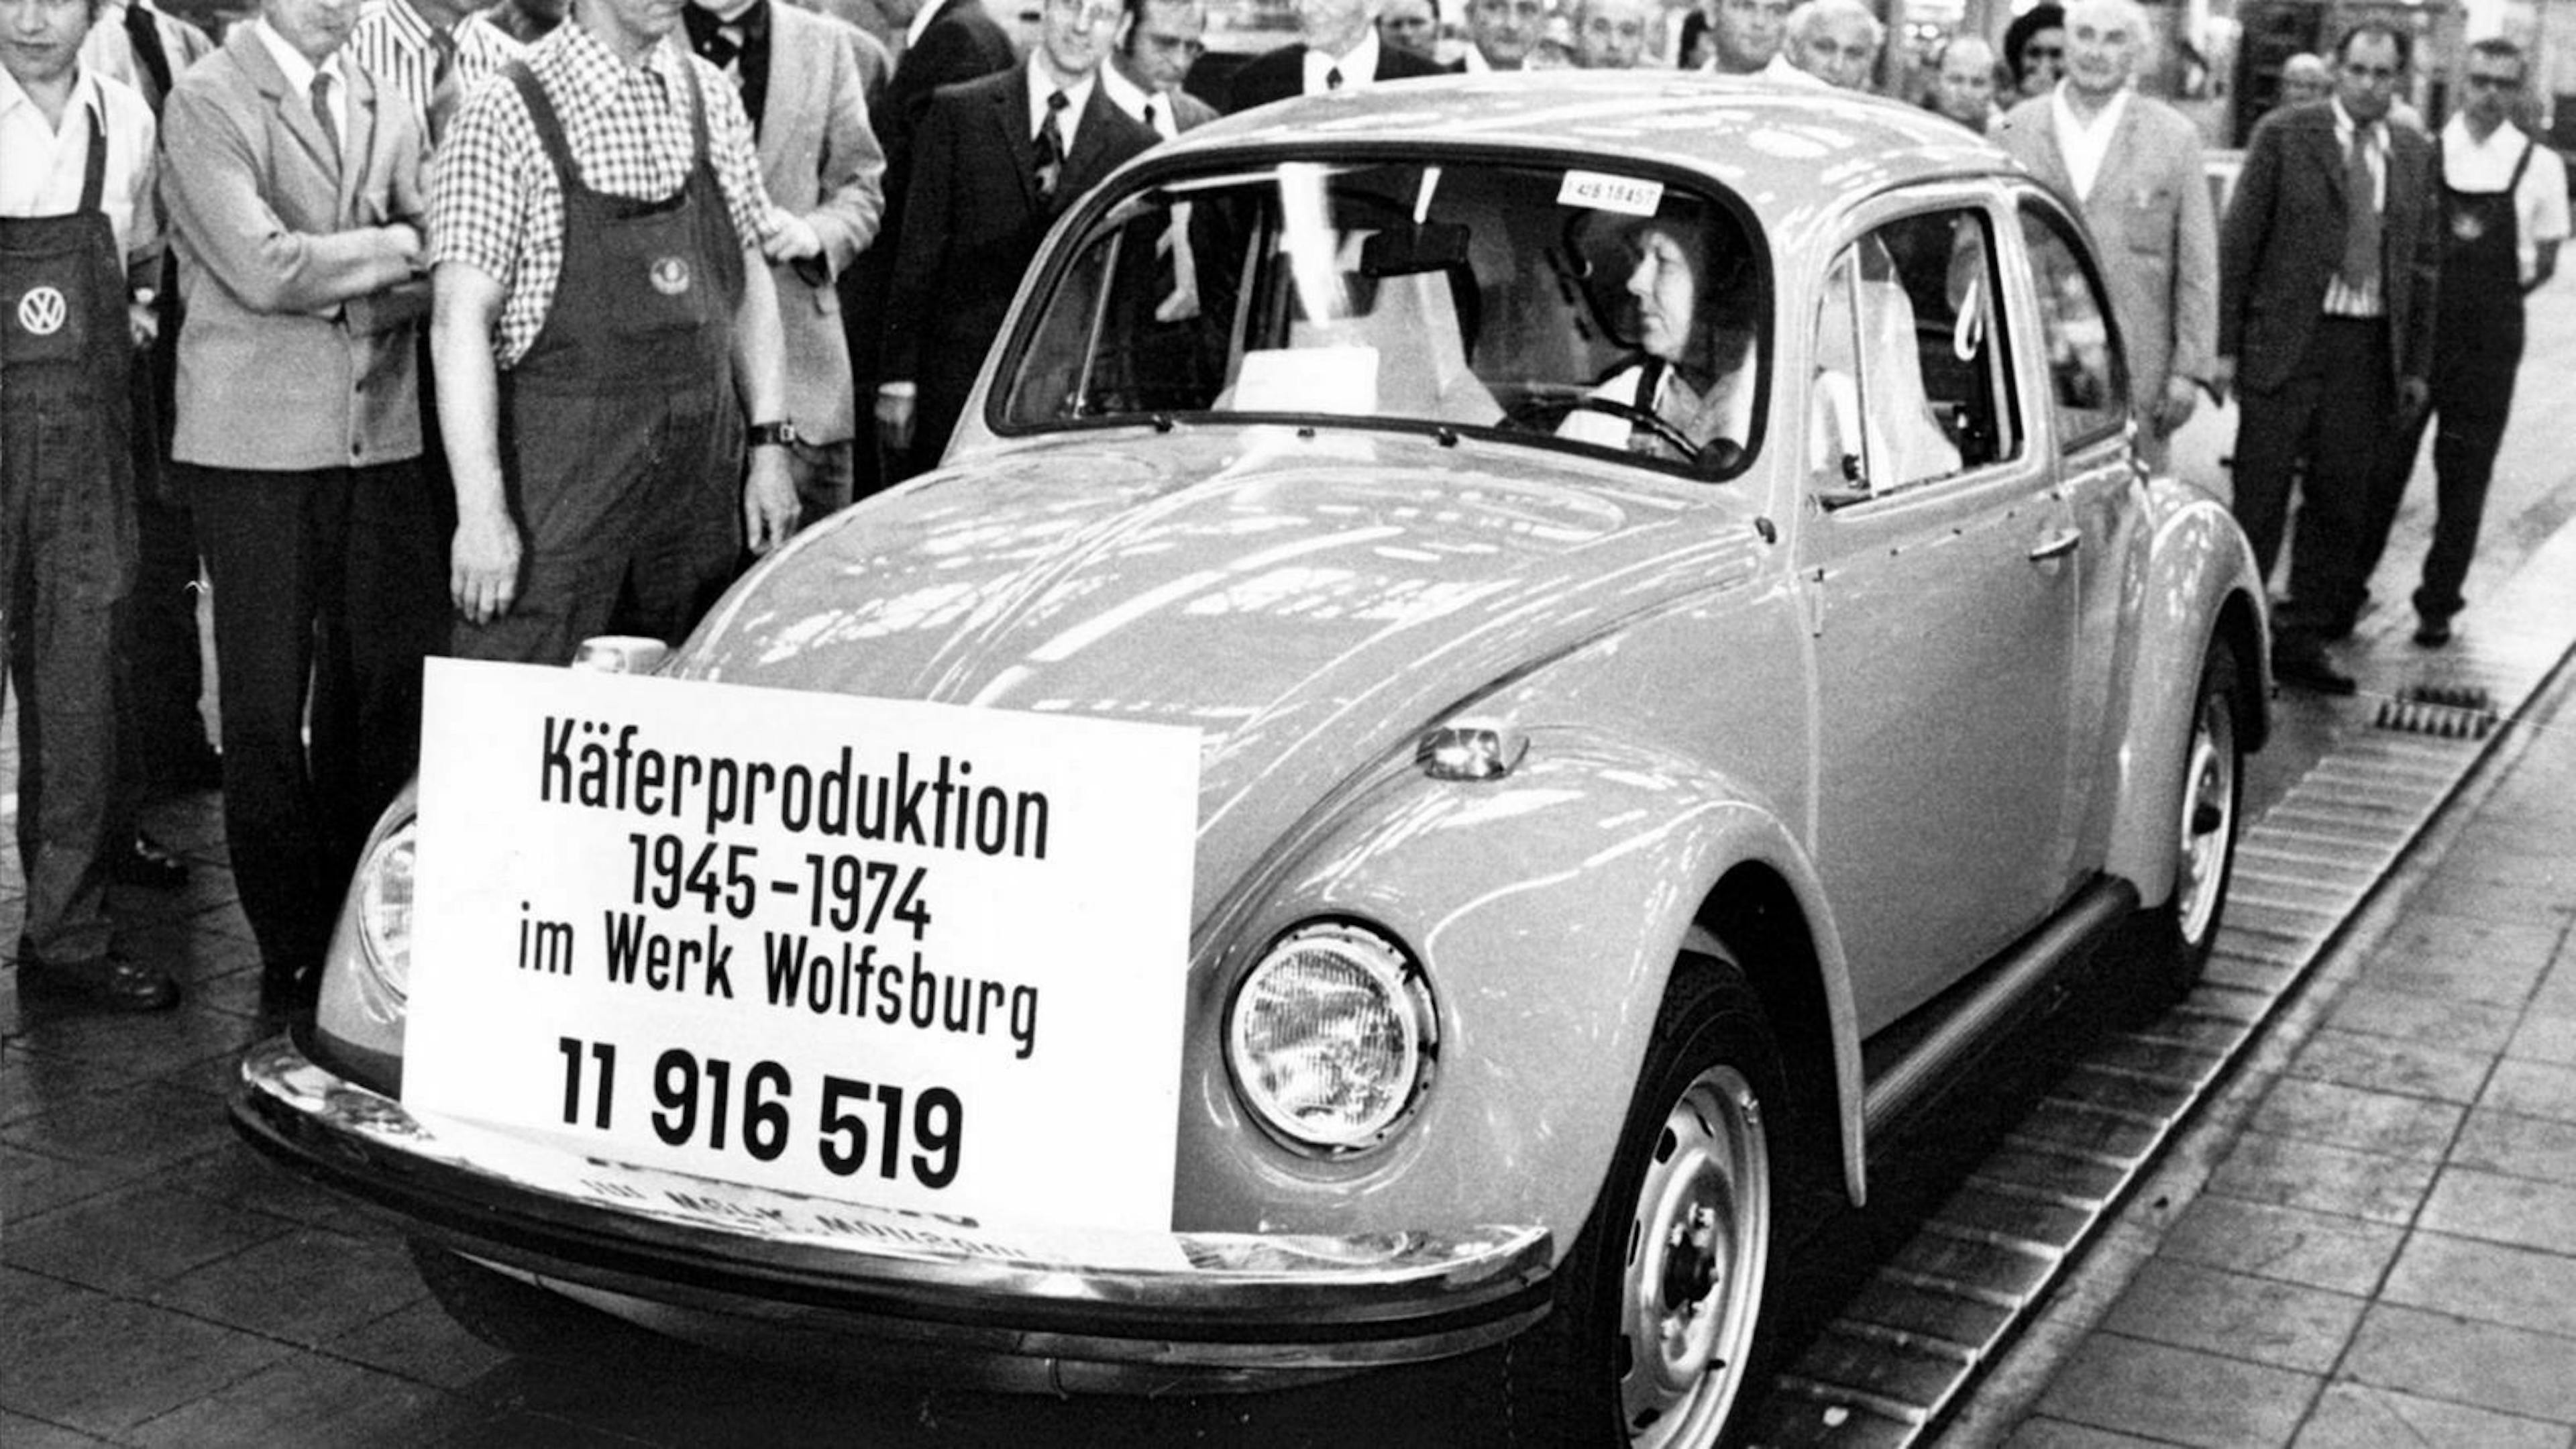 Der VW Käfer in Frontansicht mit Plakat